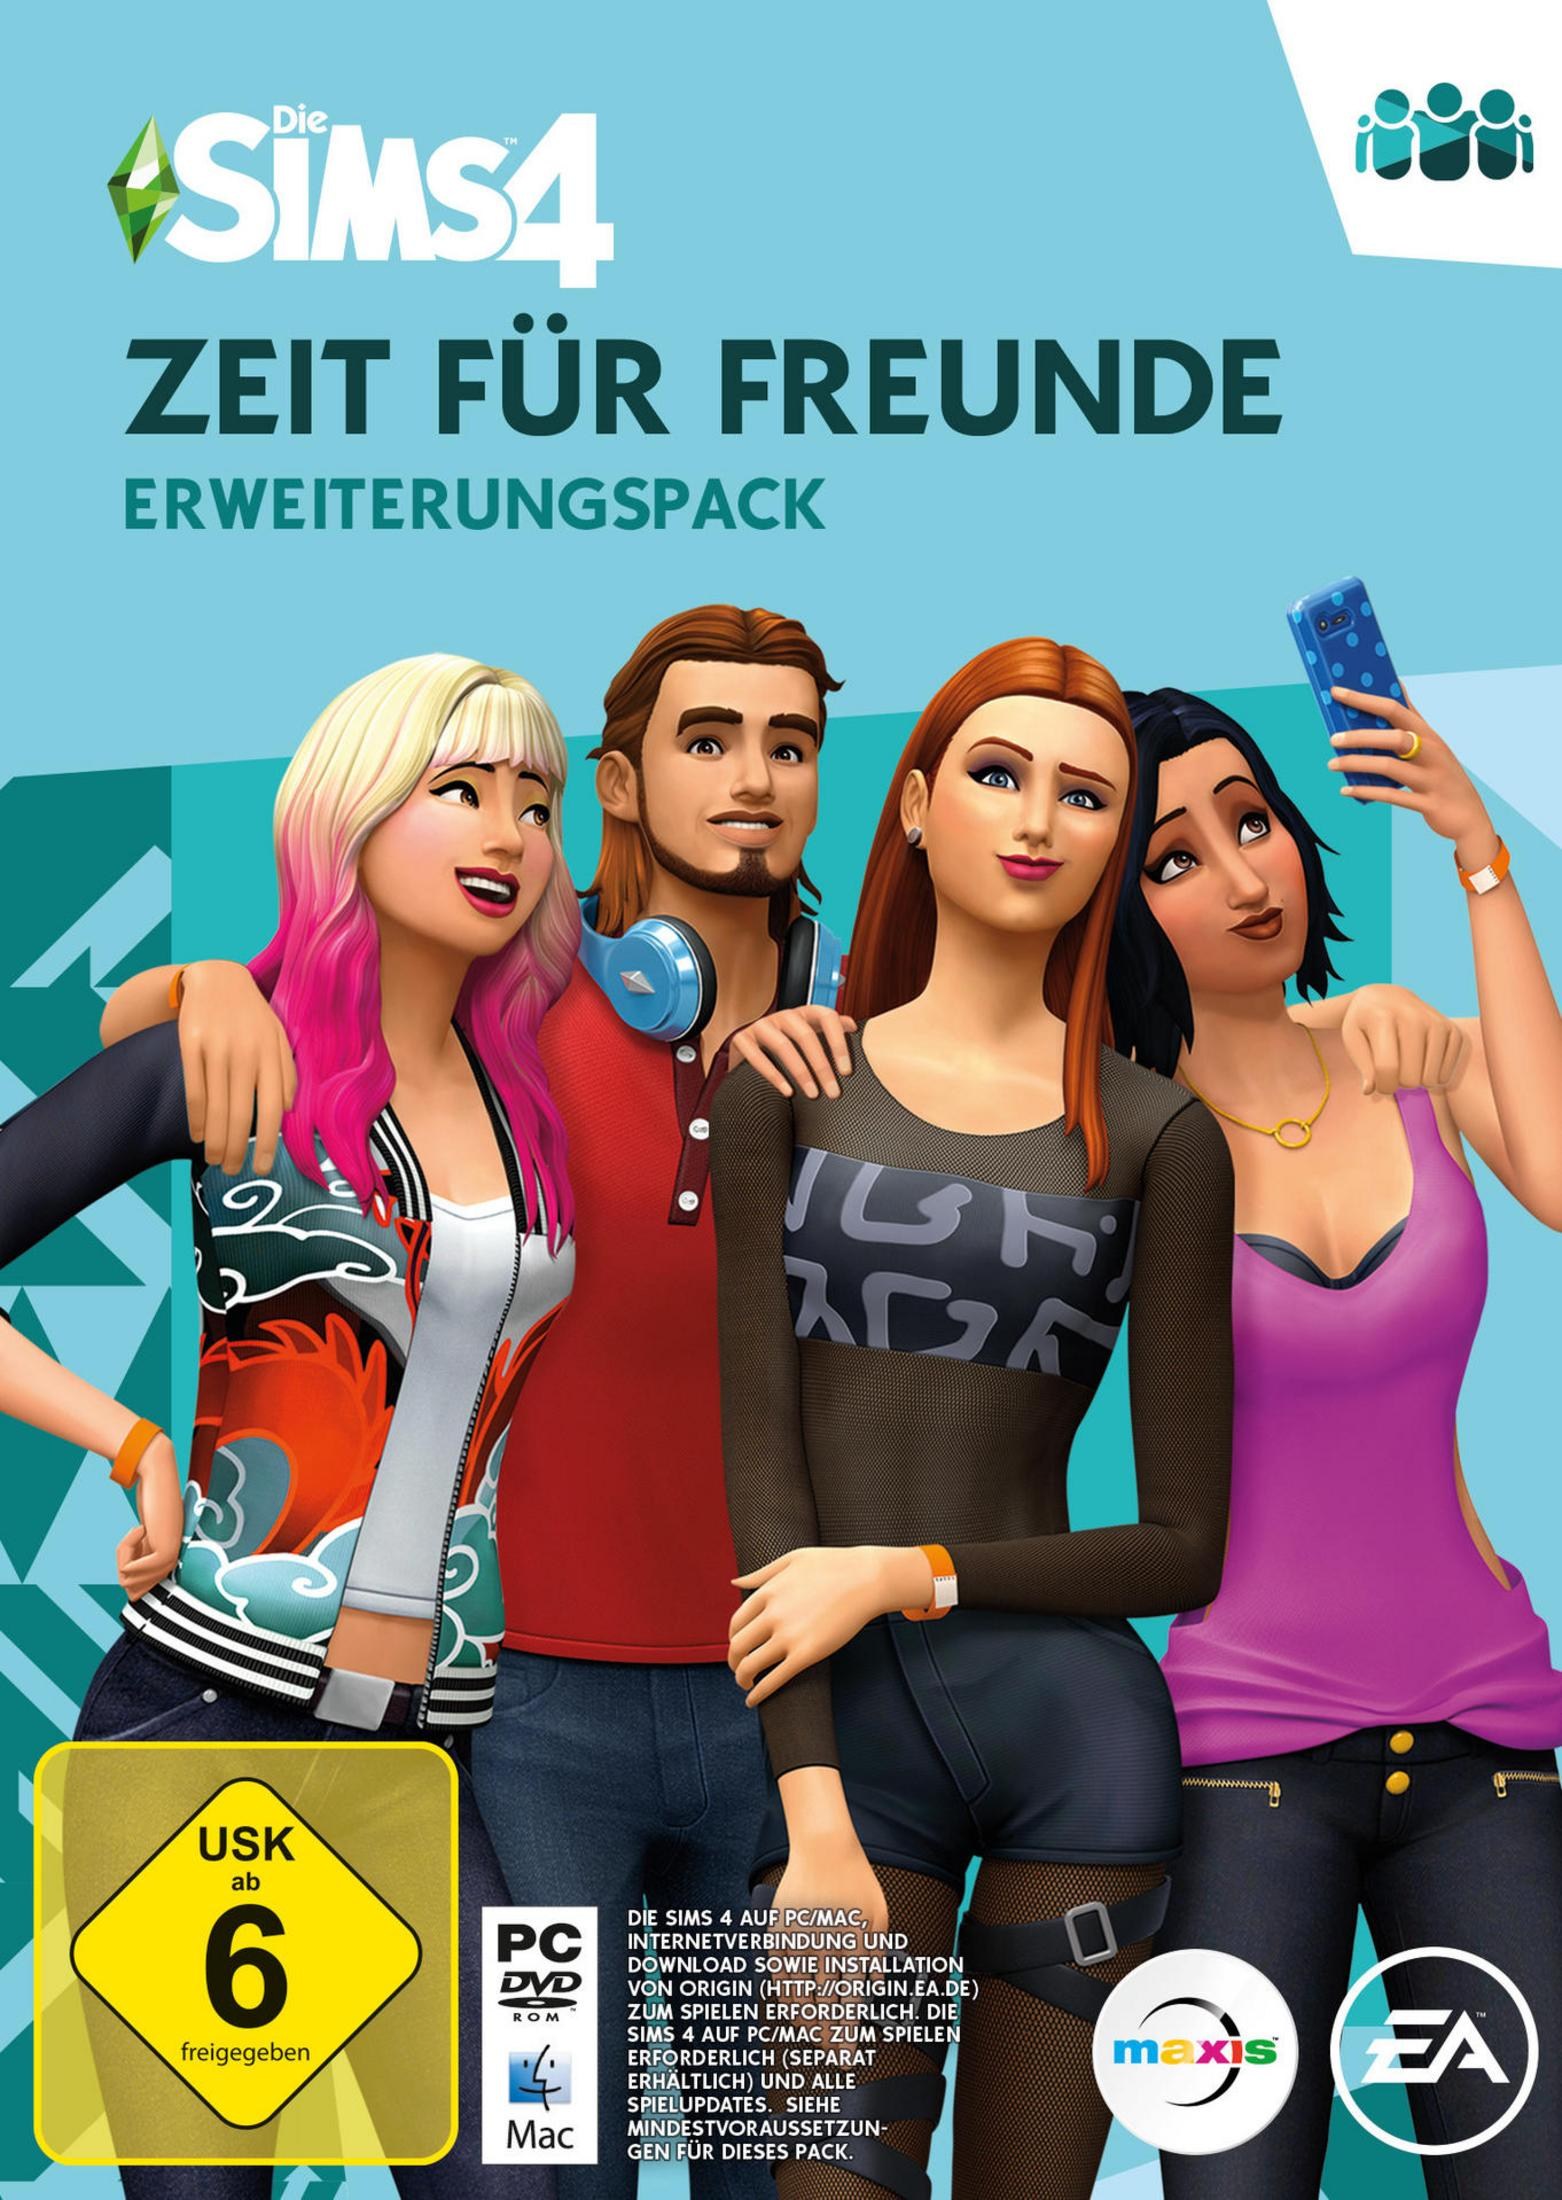 Die Sims [PC] Freunde - Zeit für 4